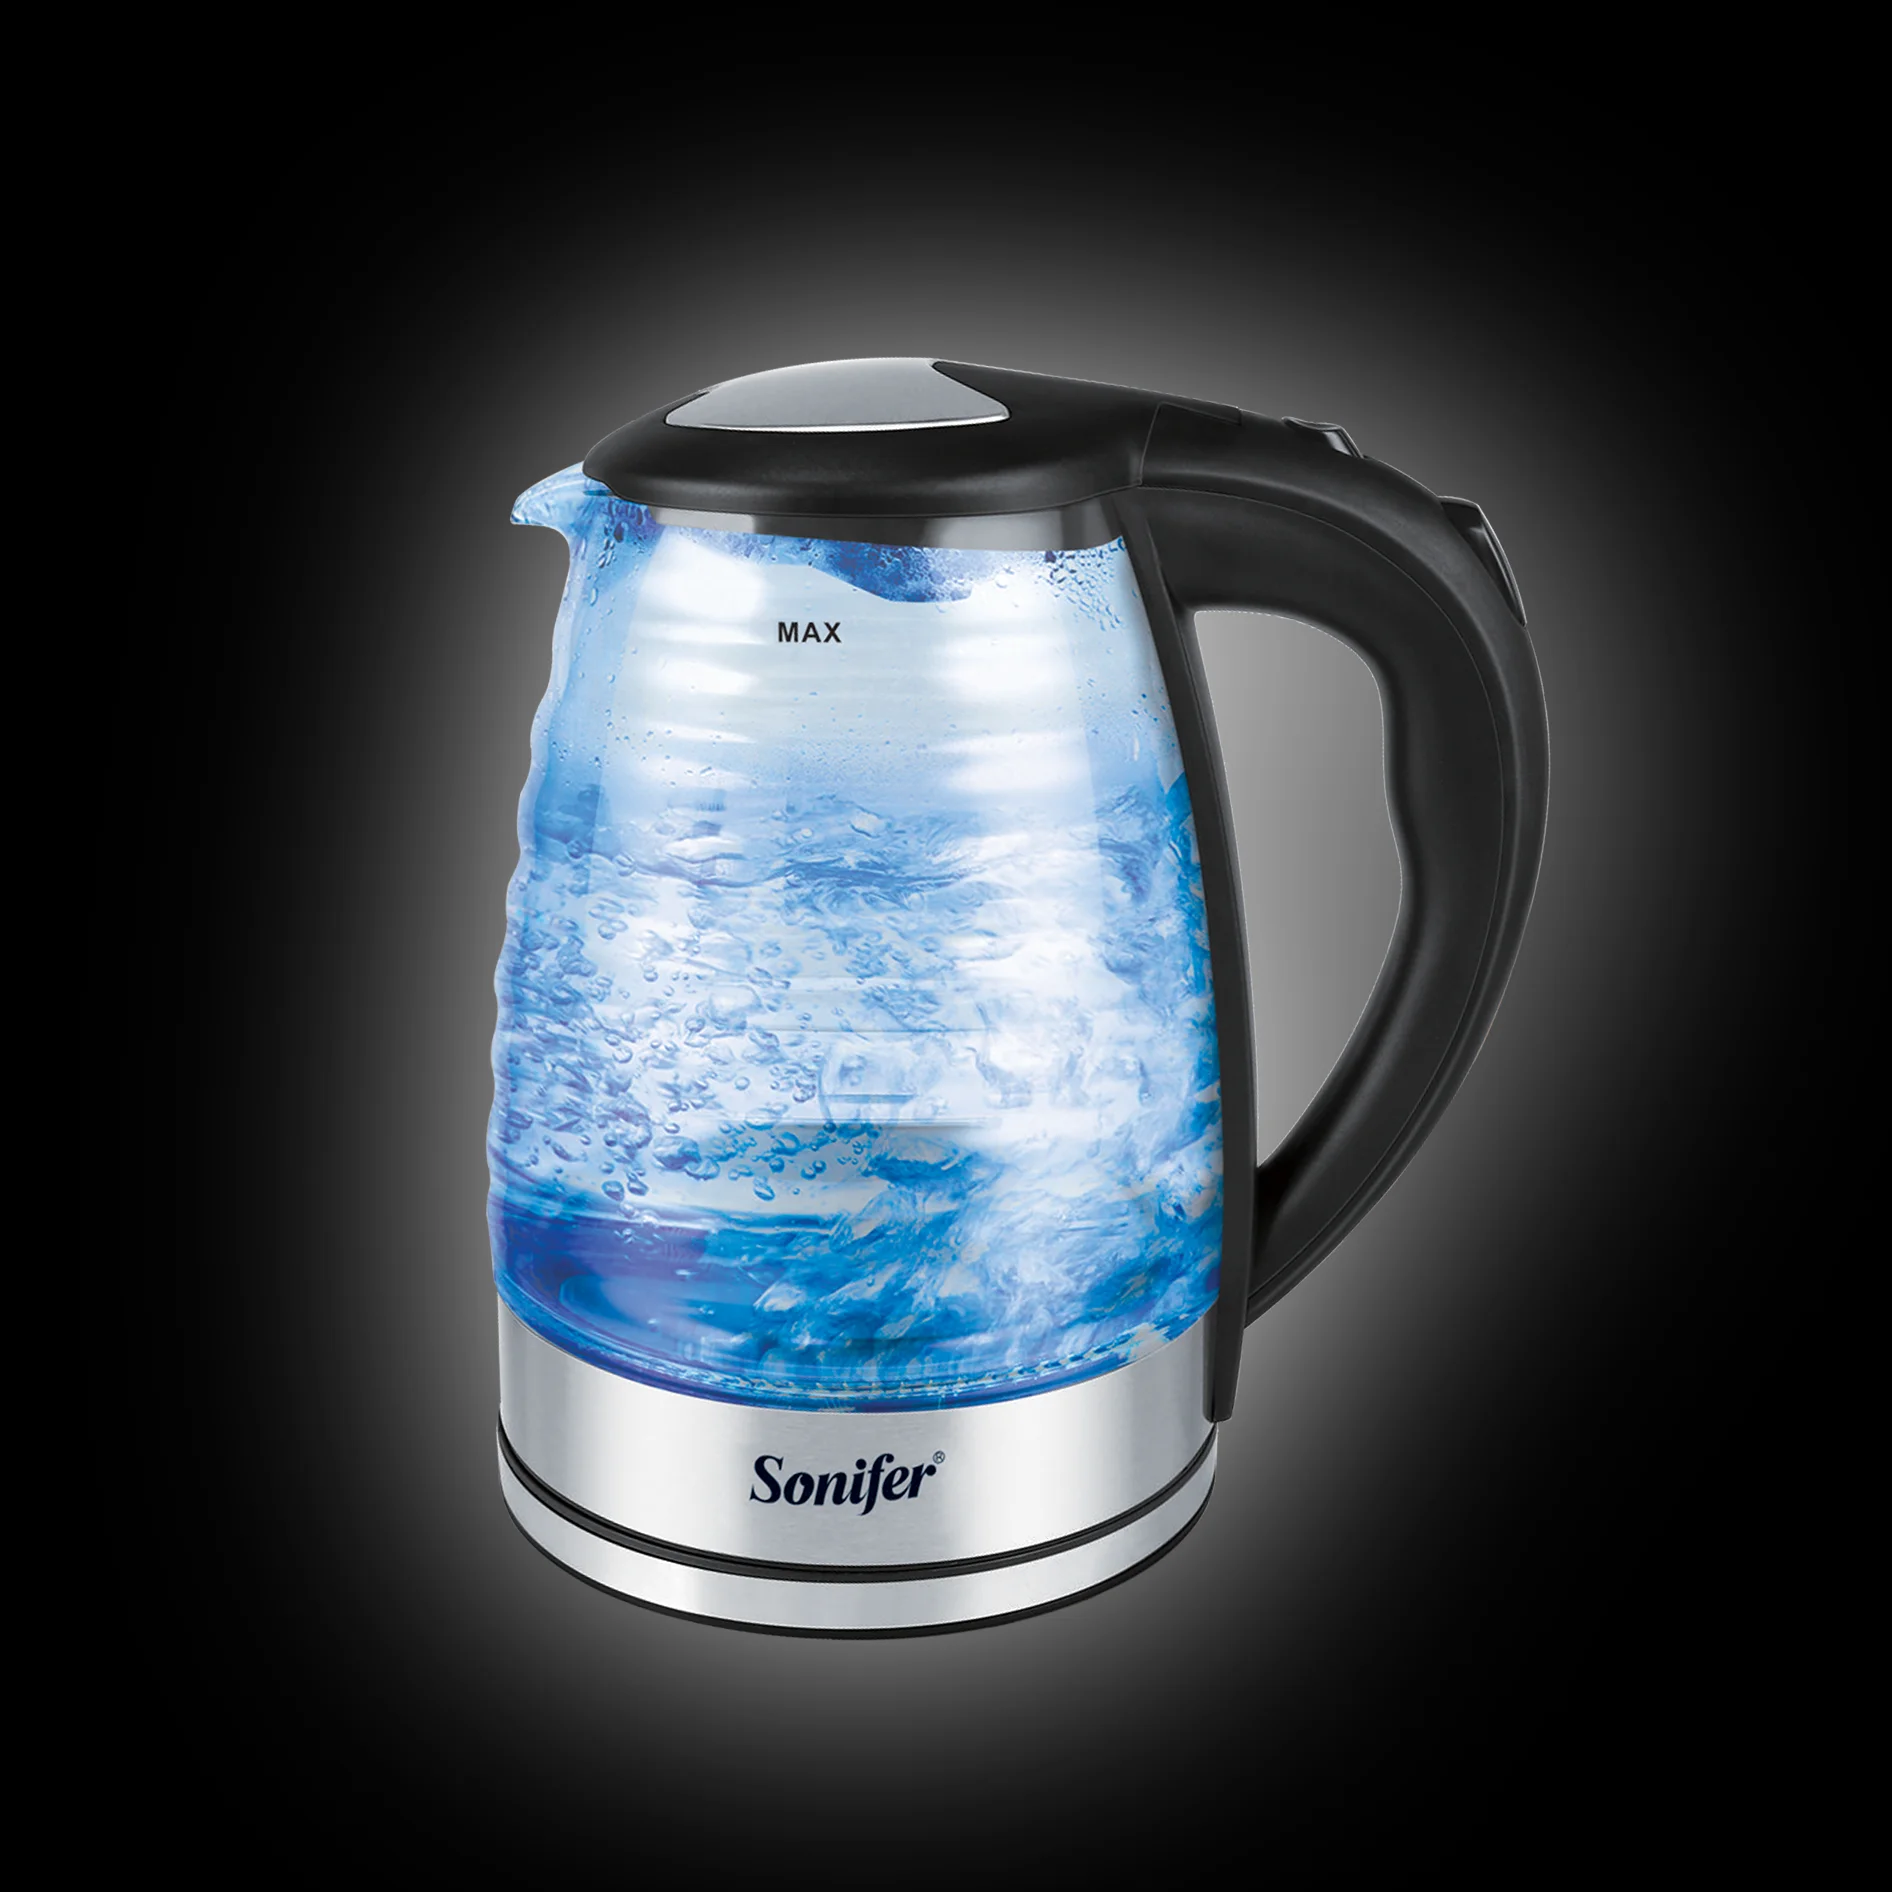 1.8л электрический стеклянный чайник прозрачный синий светодиодный светильник 1500 Вт бытовой кухонный быстрый нагрев Электрический заварочный чайник Sonifer